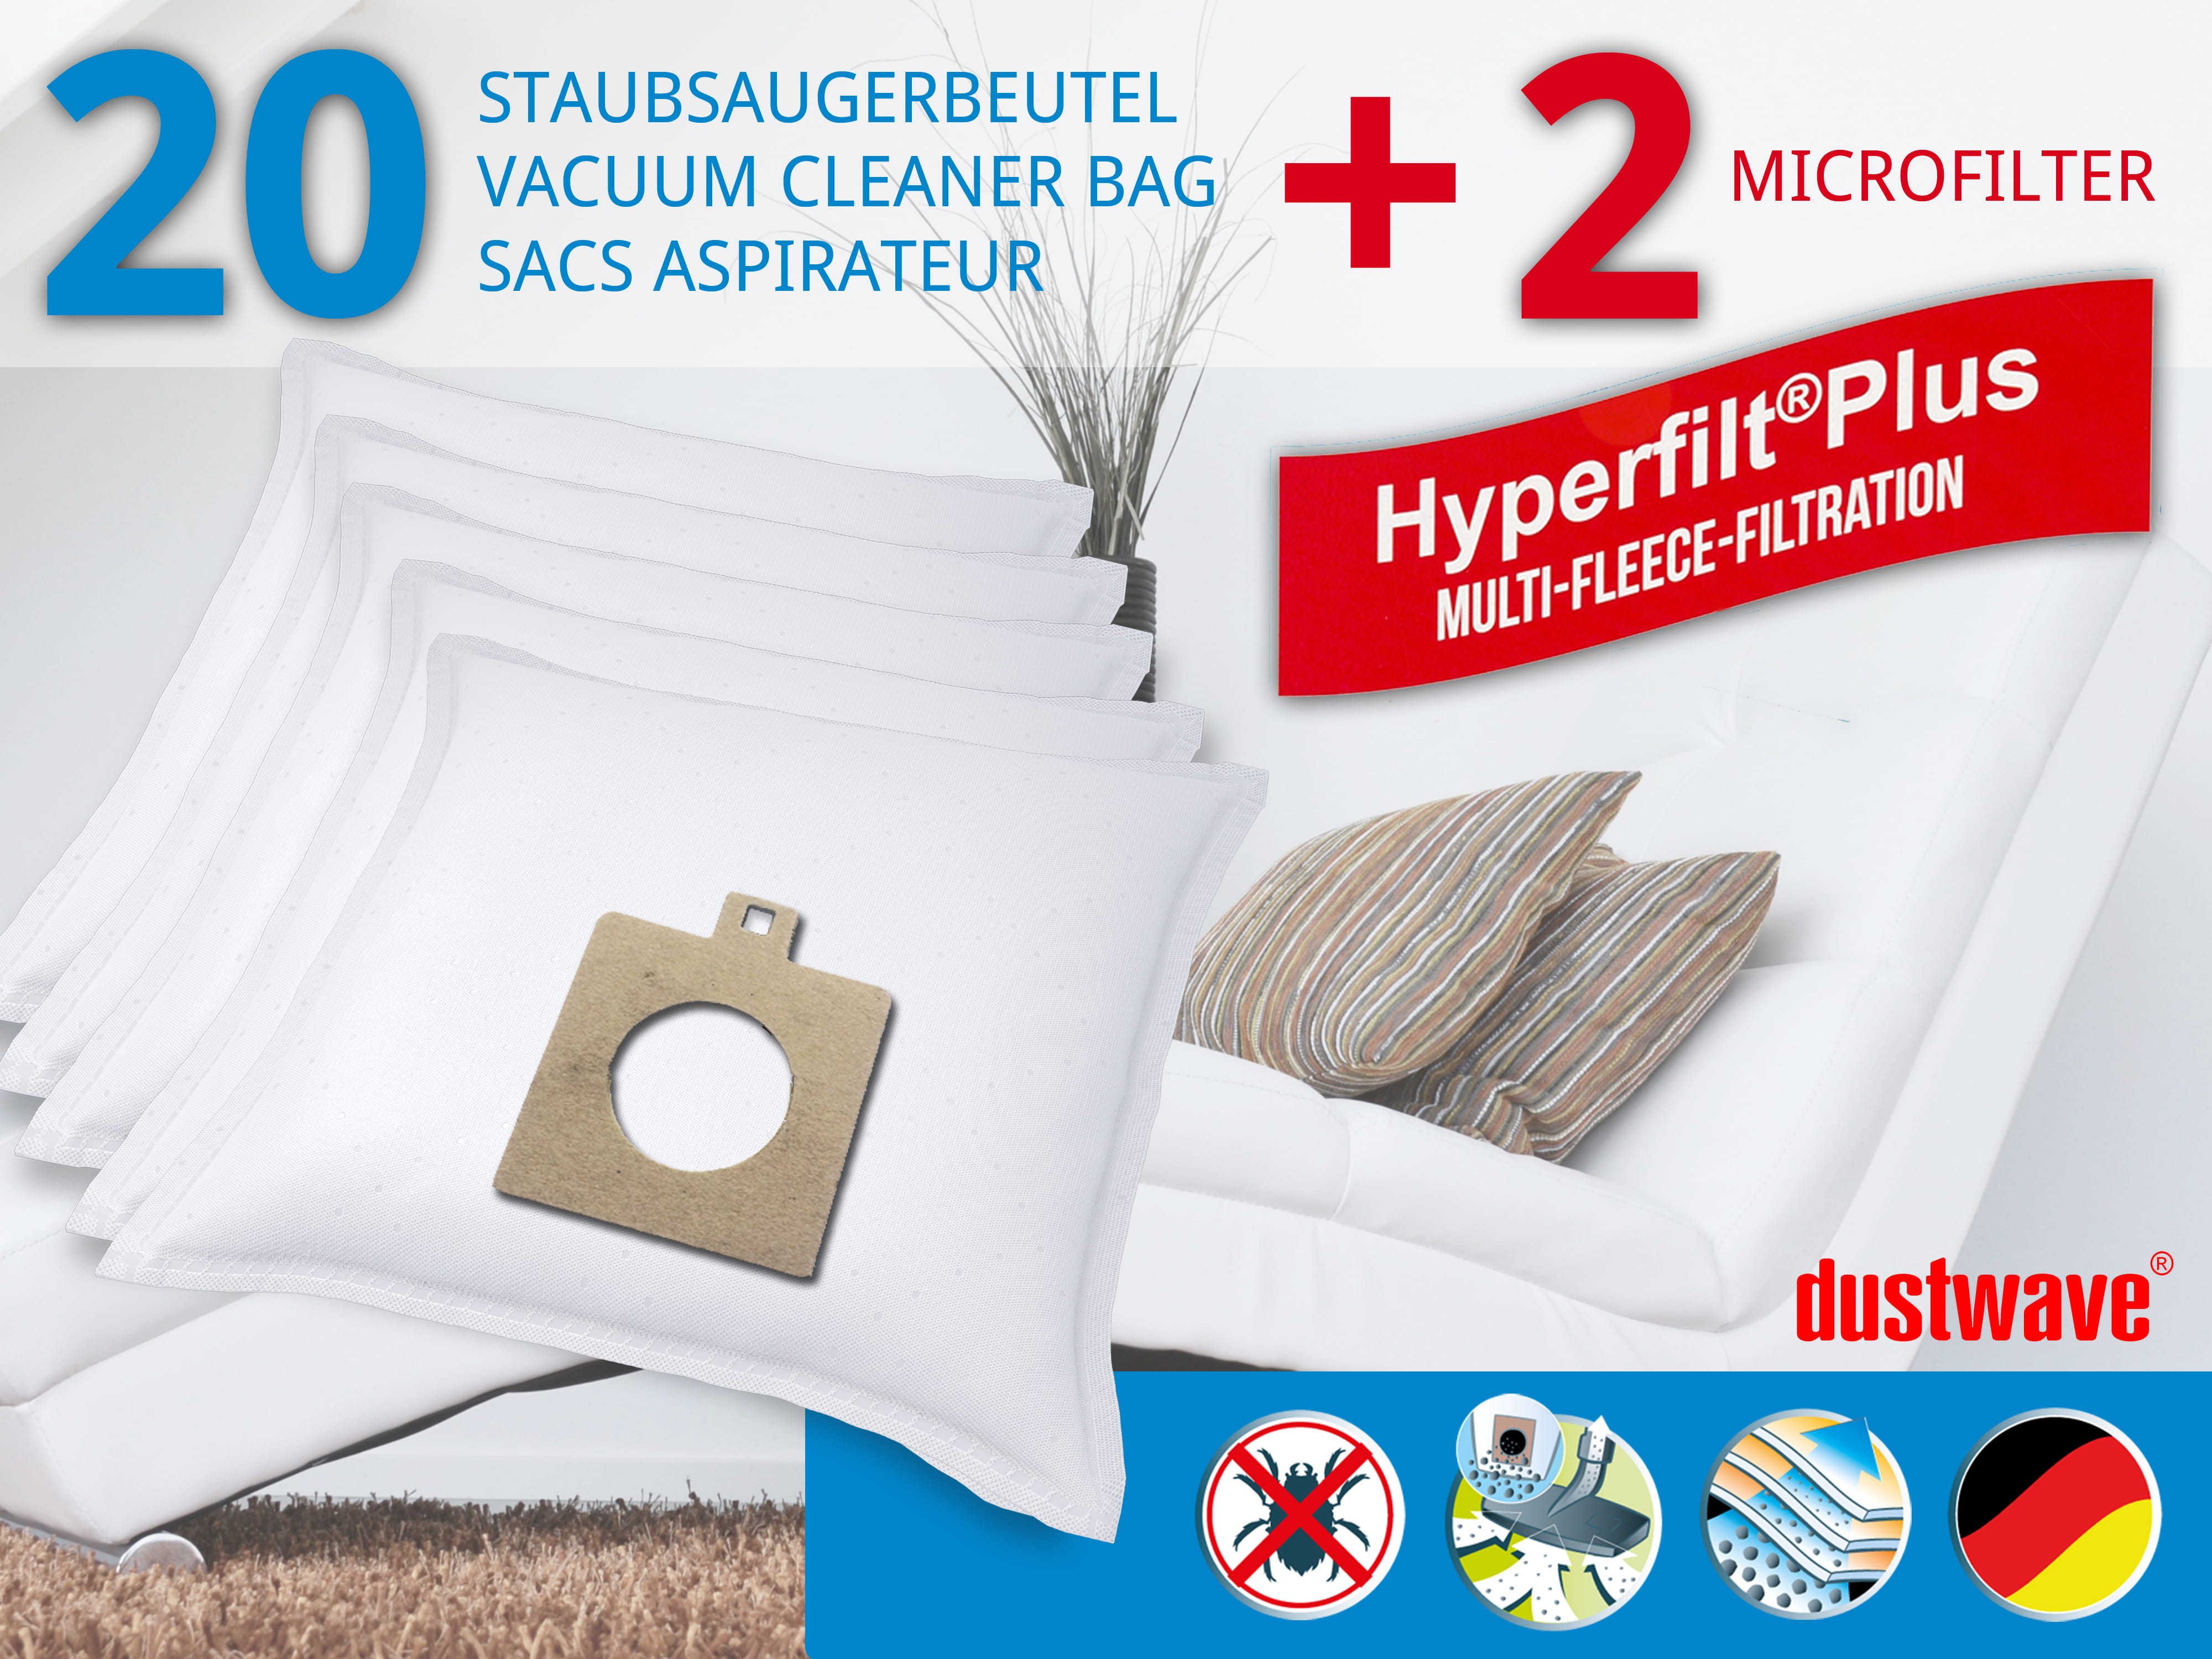 Dustwave® 20 Staubsaugerbeutel für AEG Smart 460 - hocheffizient mit Hygieneverschluss - Made in Germany